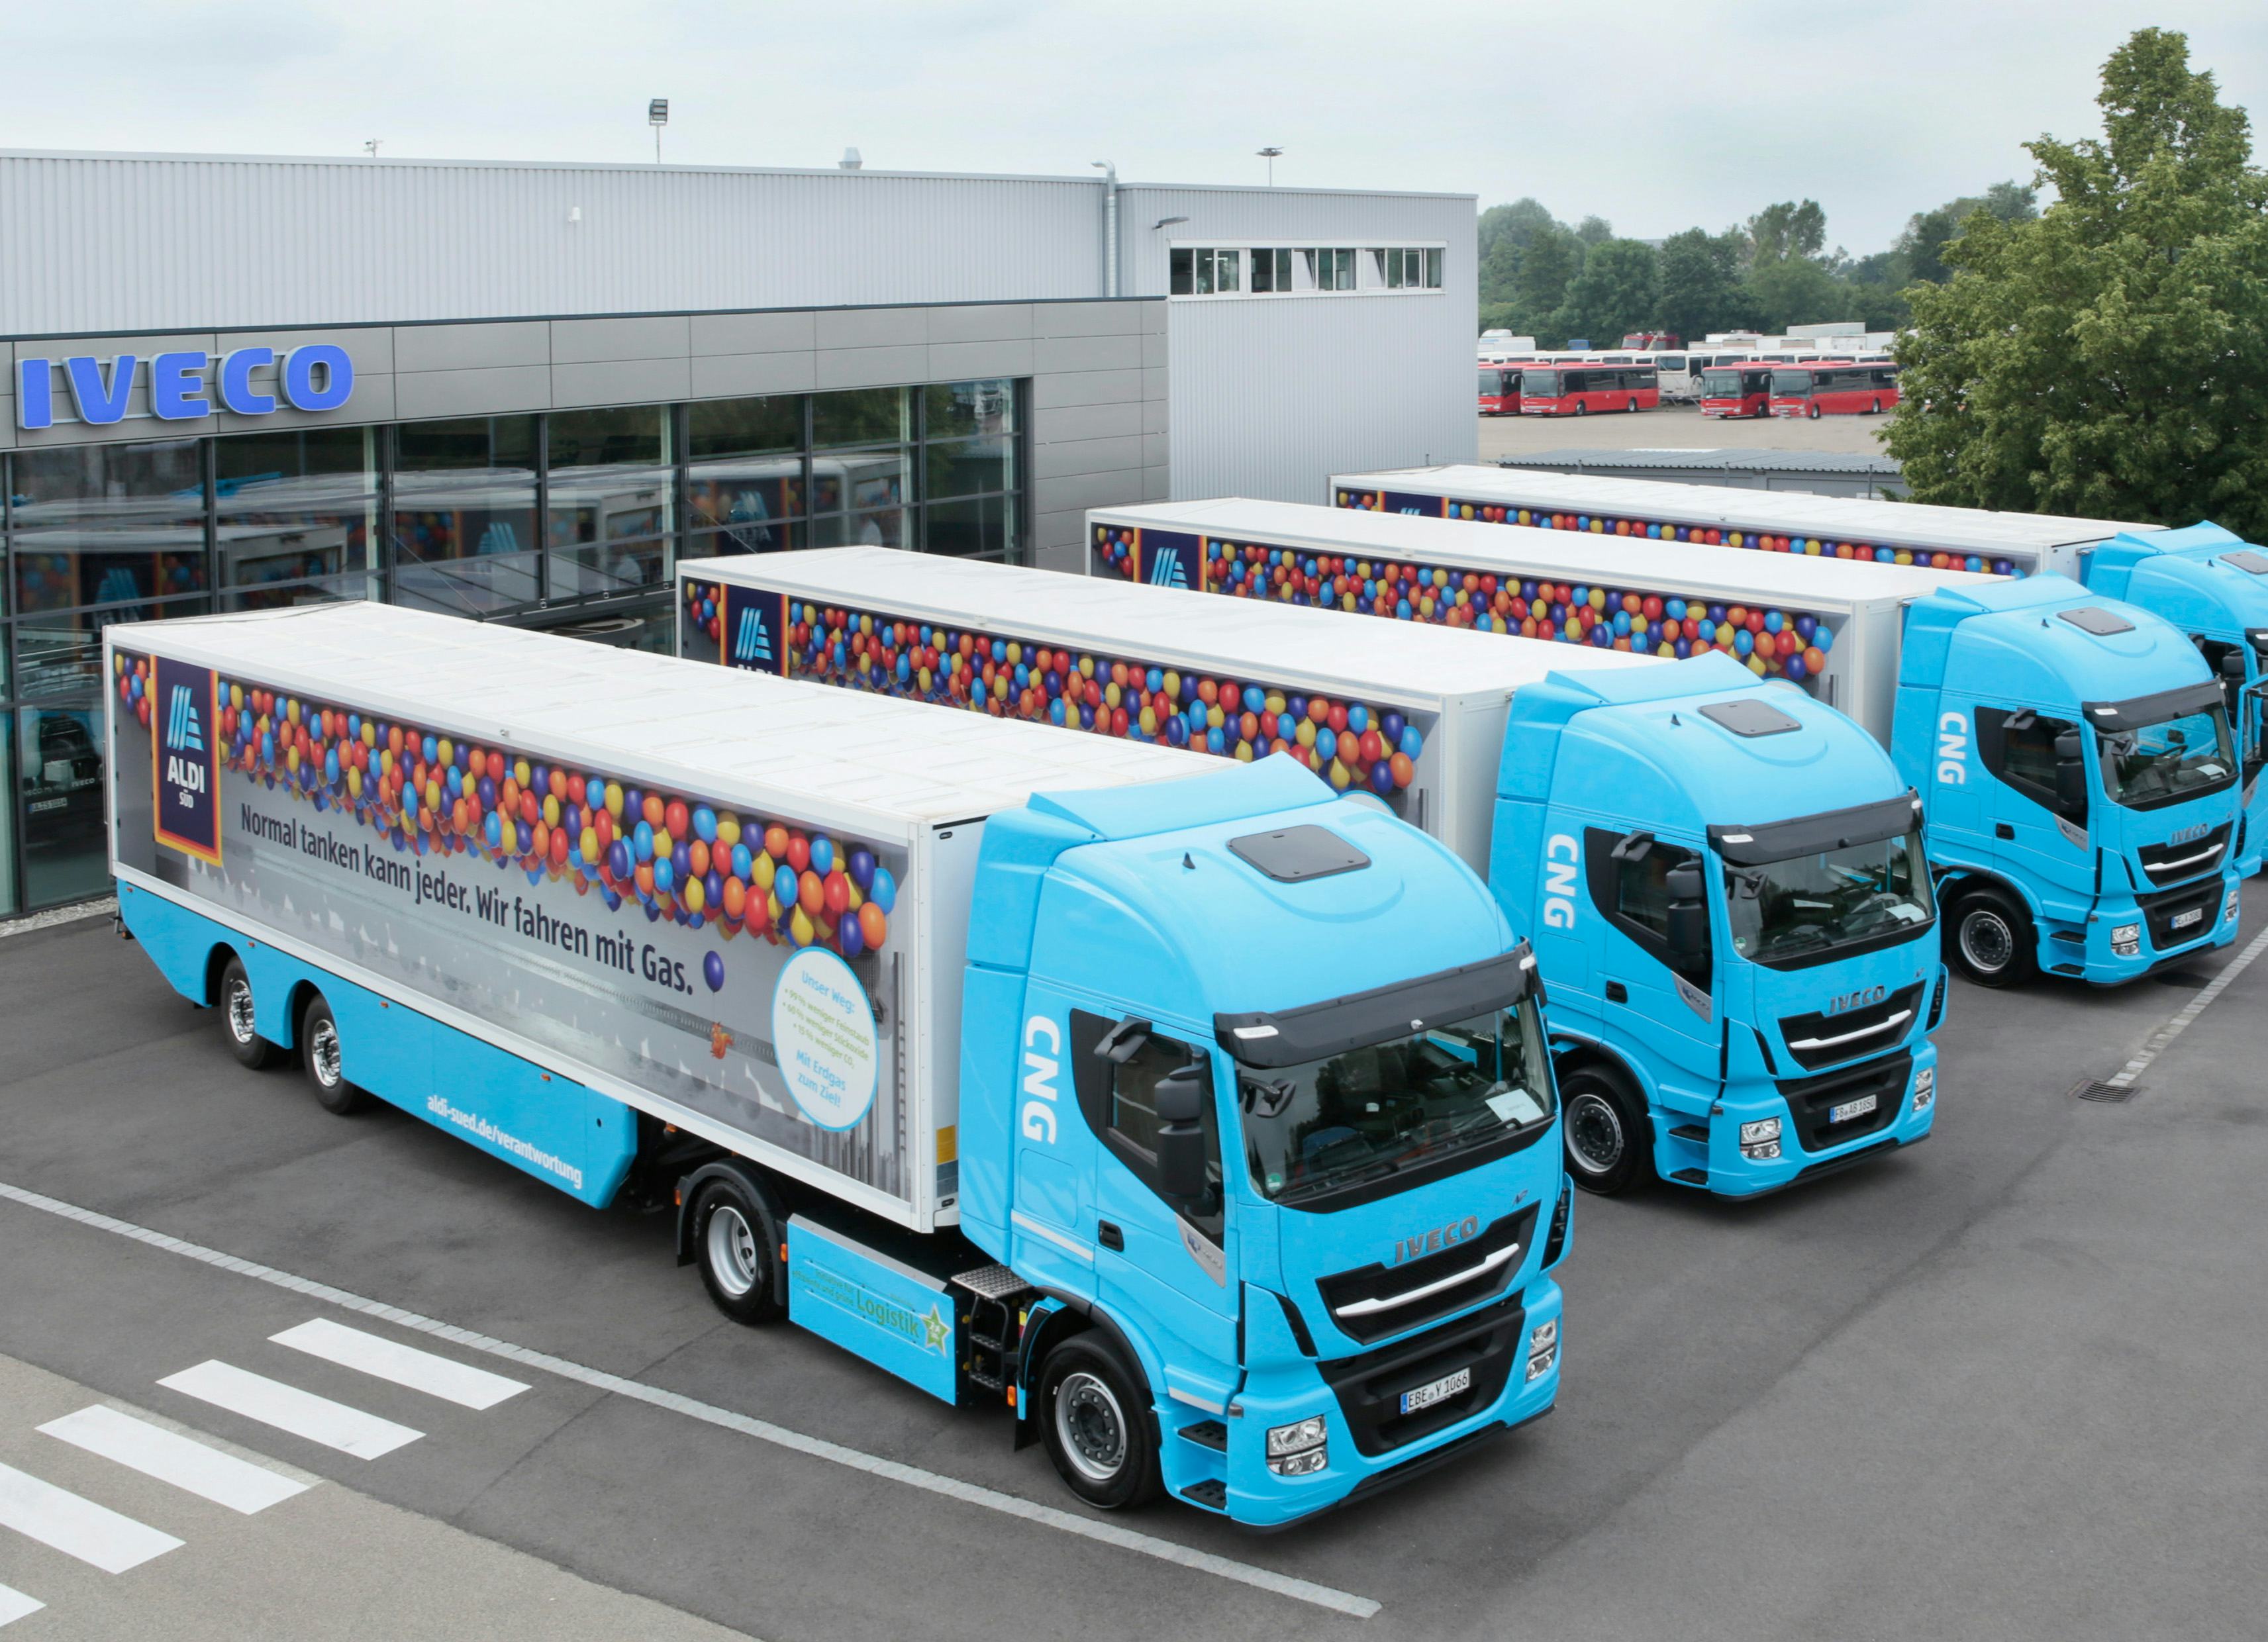 Aldi Süd houdt een test met vrachtwagens die rijden op aardgas. Foto: Aldi Süd